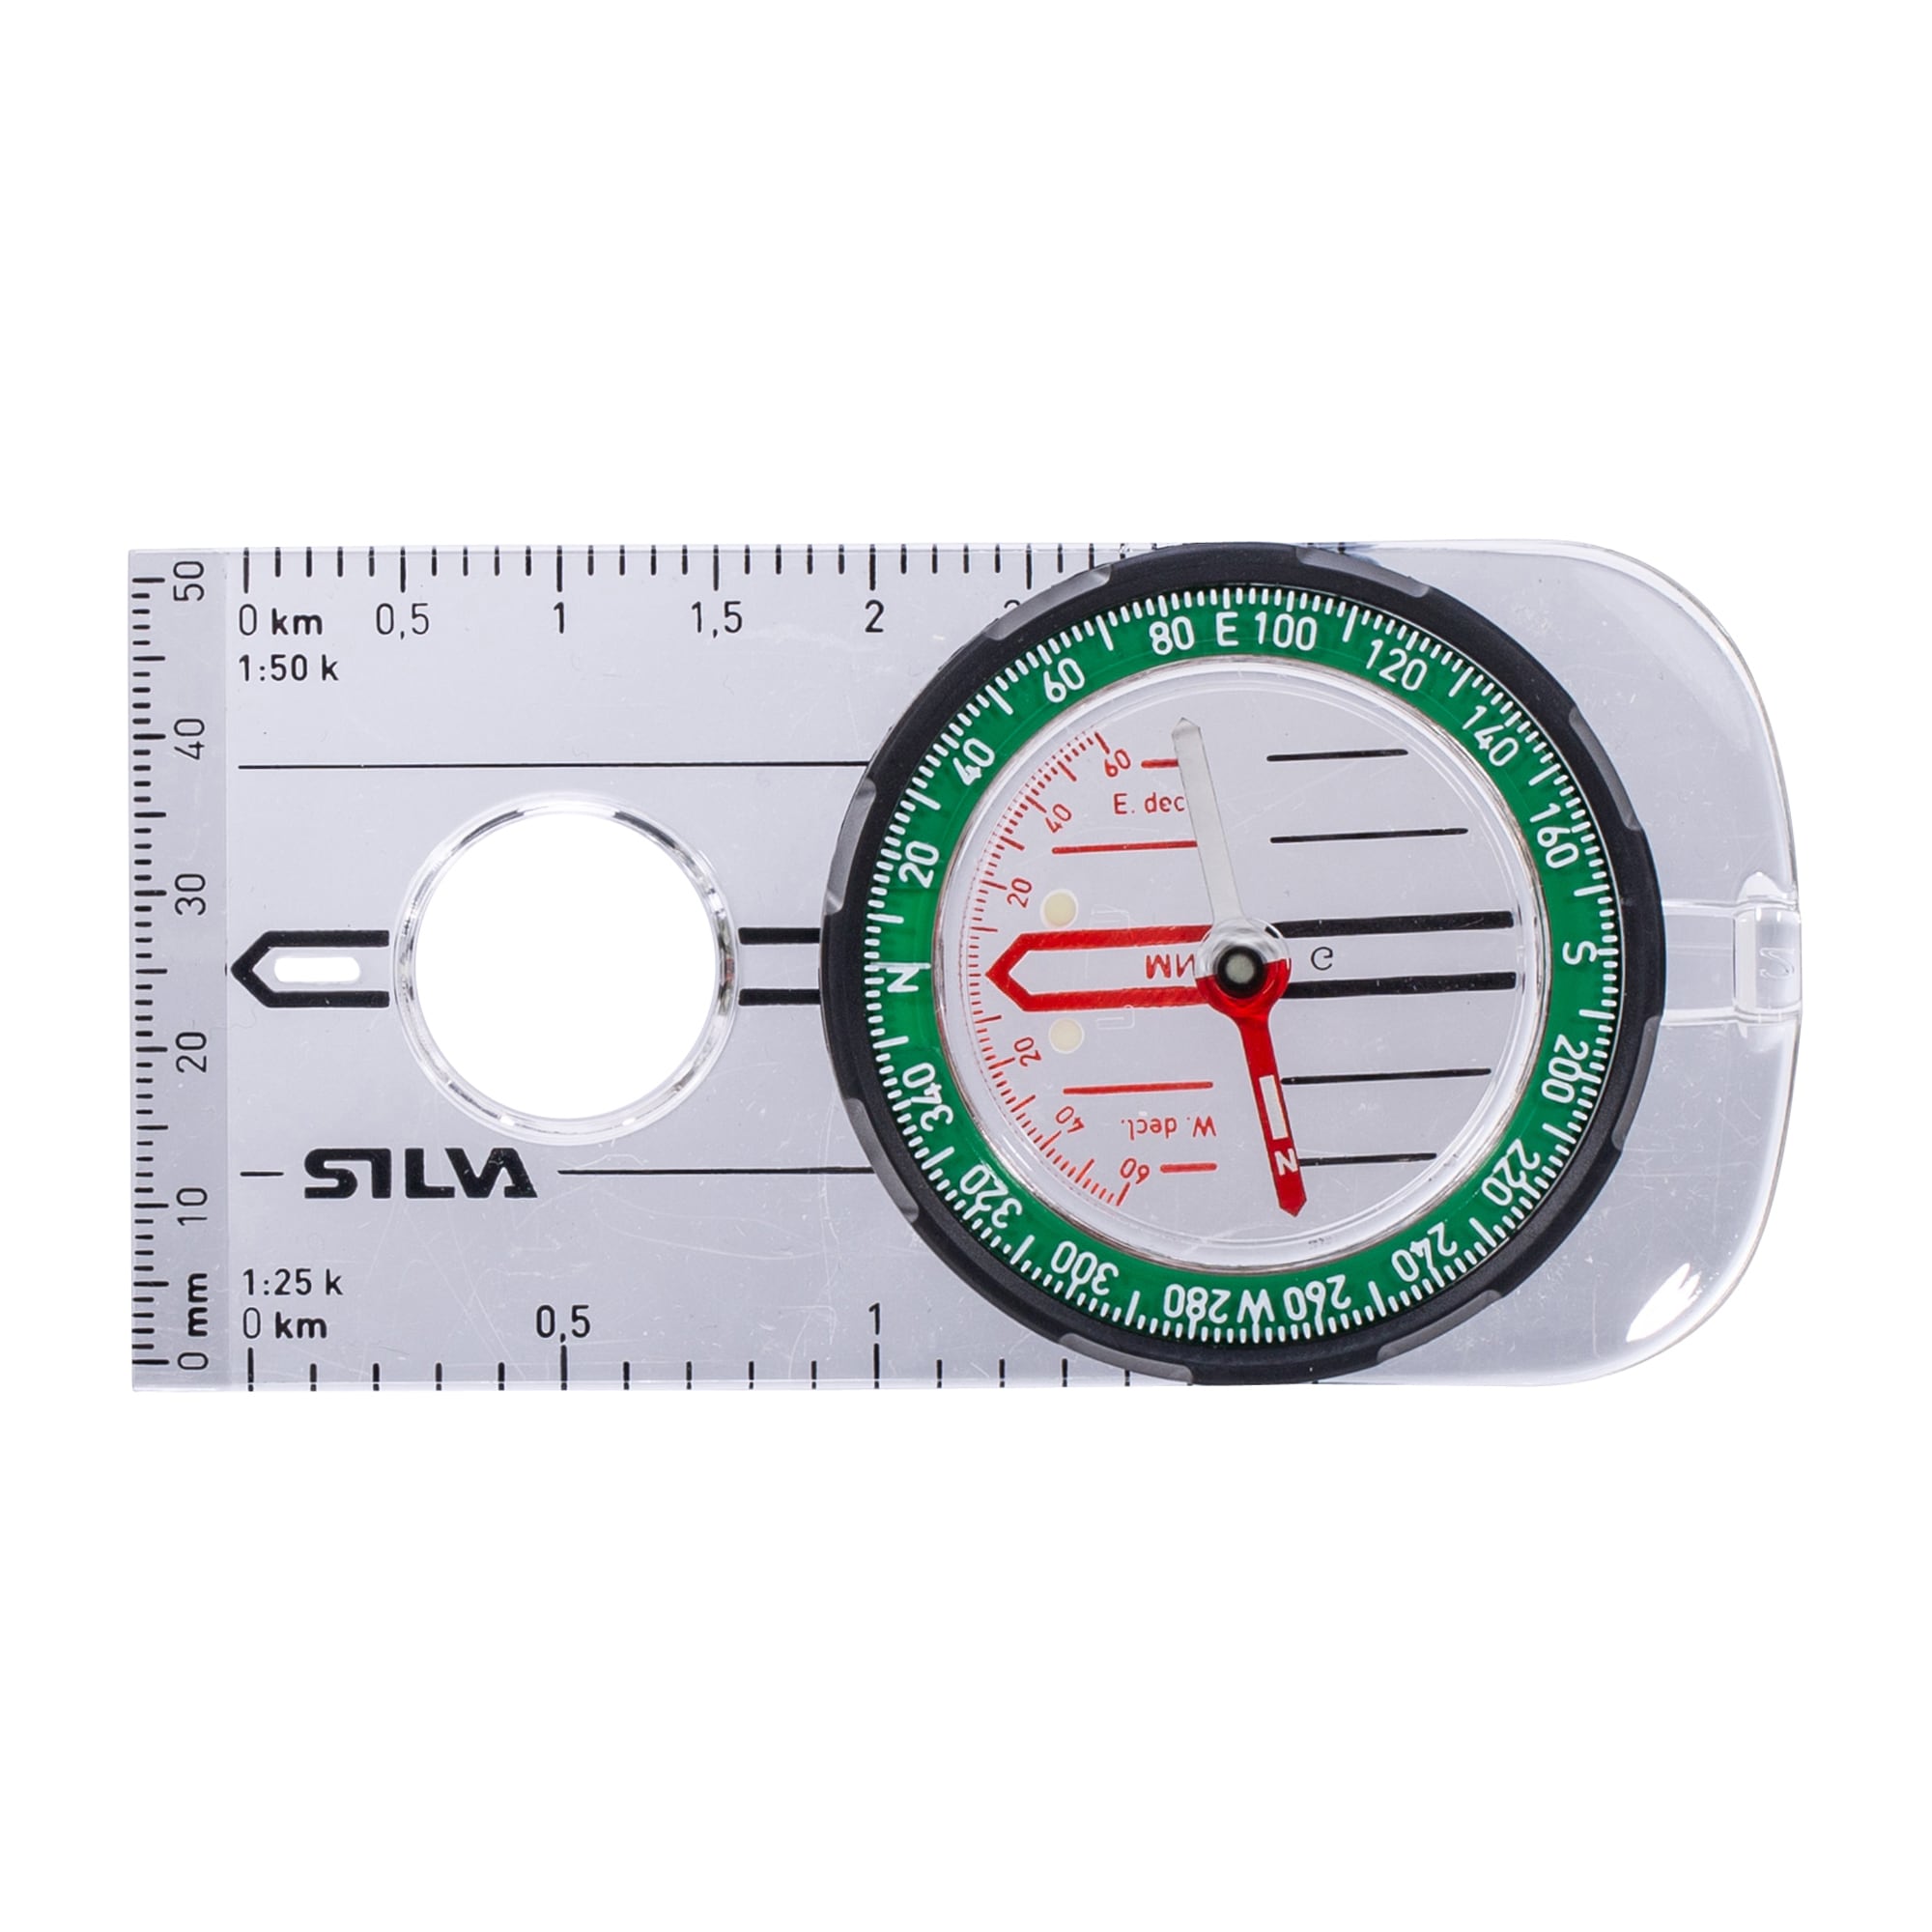 Silva Ranger 360 Global - Boussoles - Instruments d'Orientation -  Électronique et Orientation en